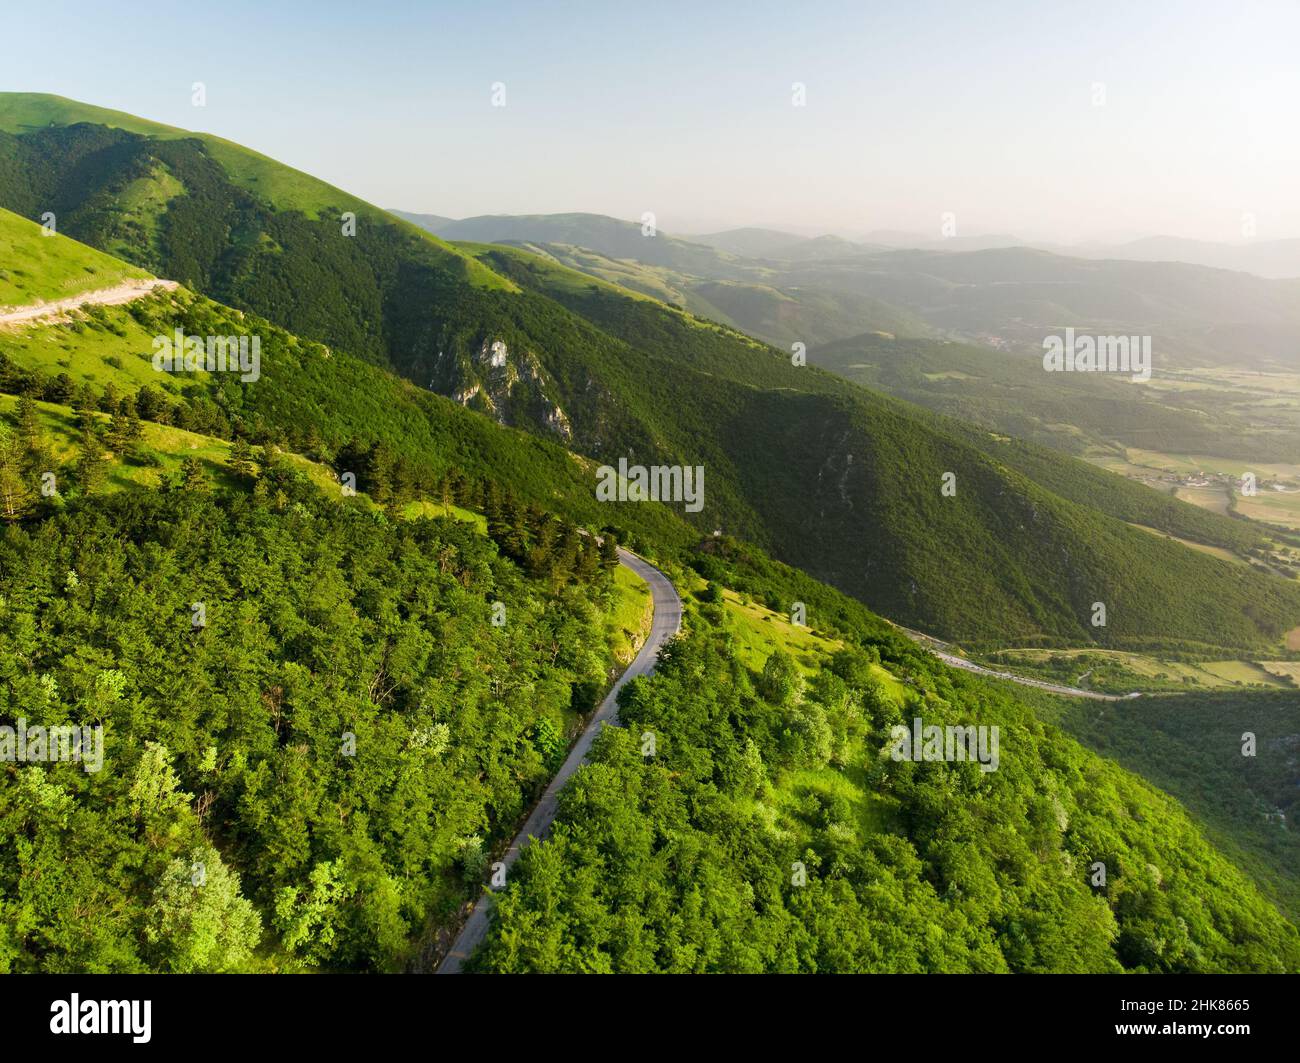 Luftaufnahme von den Sibylline Mountains, einer der größten Berggruppen der kursiven Halbinsel. Nationalpark Monti Sibillini, Umbrien, Italien. Stockfoto